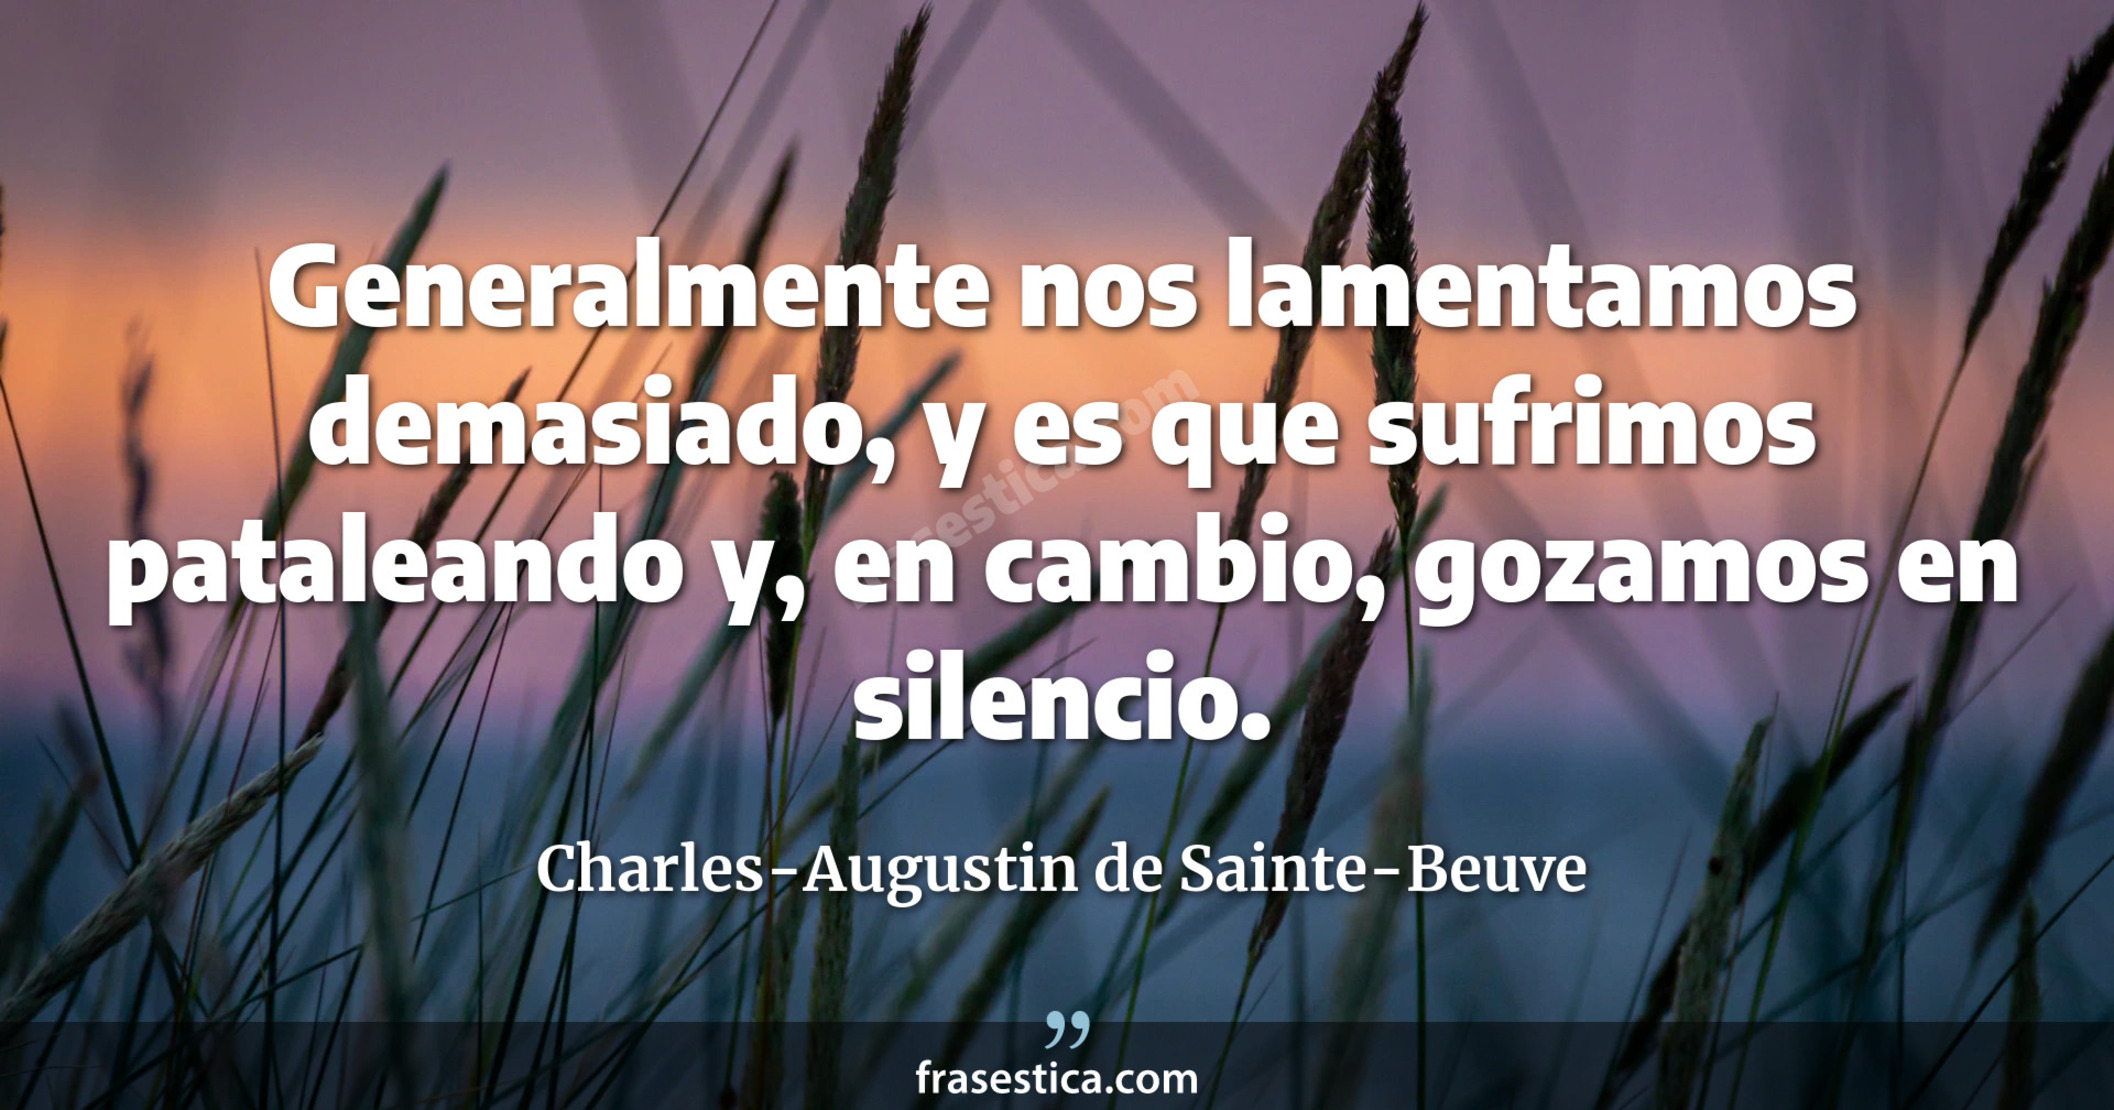 Generalmente nos lamentamos demasiado, y es que sufrimos pataleando y, en cambio, gozamos en silencio. - Charles-Augustin de Sainte-Beuve